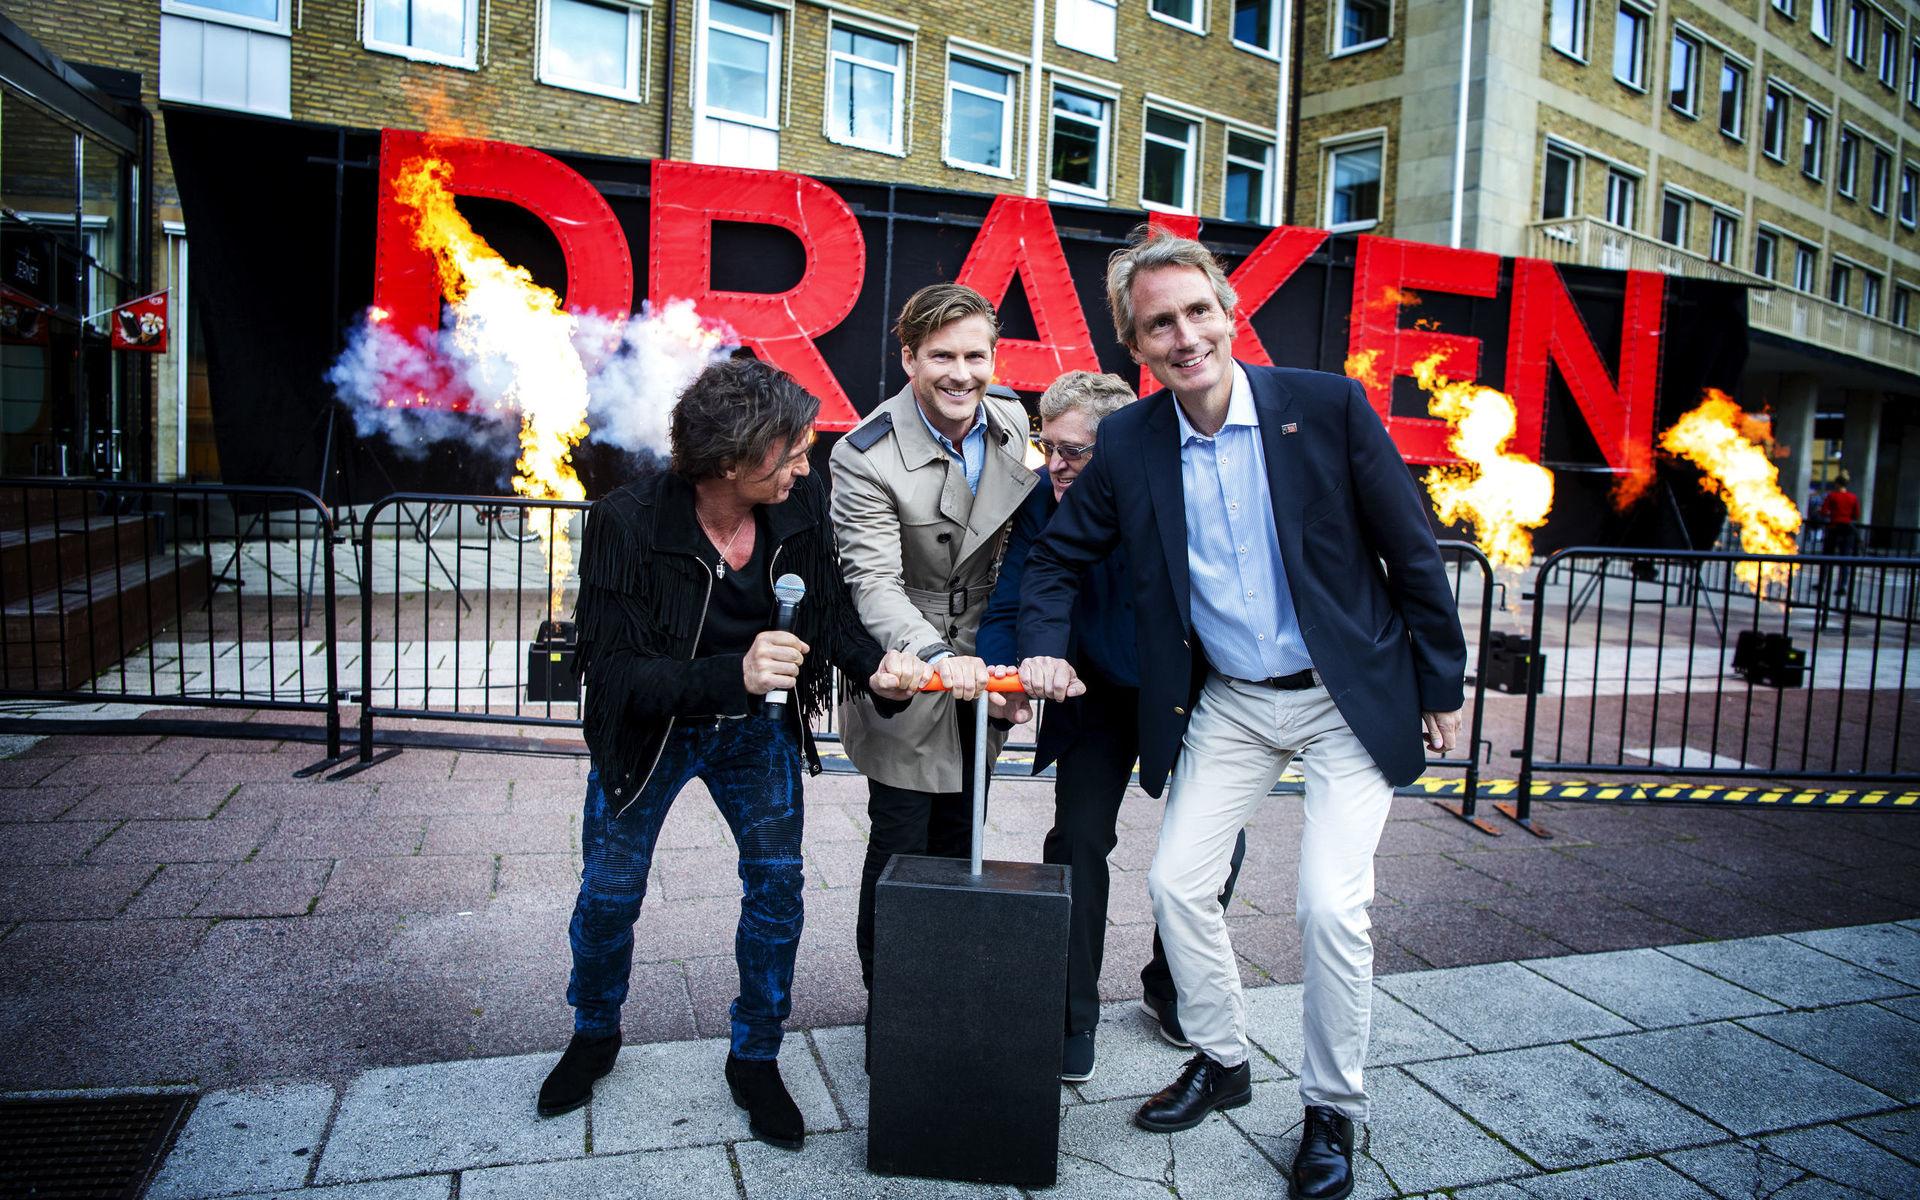 Investeraren Petter Stordalen, Erik Selin, vd för Balder, Hampus Magnusson (M) och Mats Arnsmar, vd för Folkets hus, satte igång fyrverkeripjäser för att fira byggstarten av Hotell Draken i september.